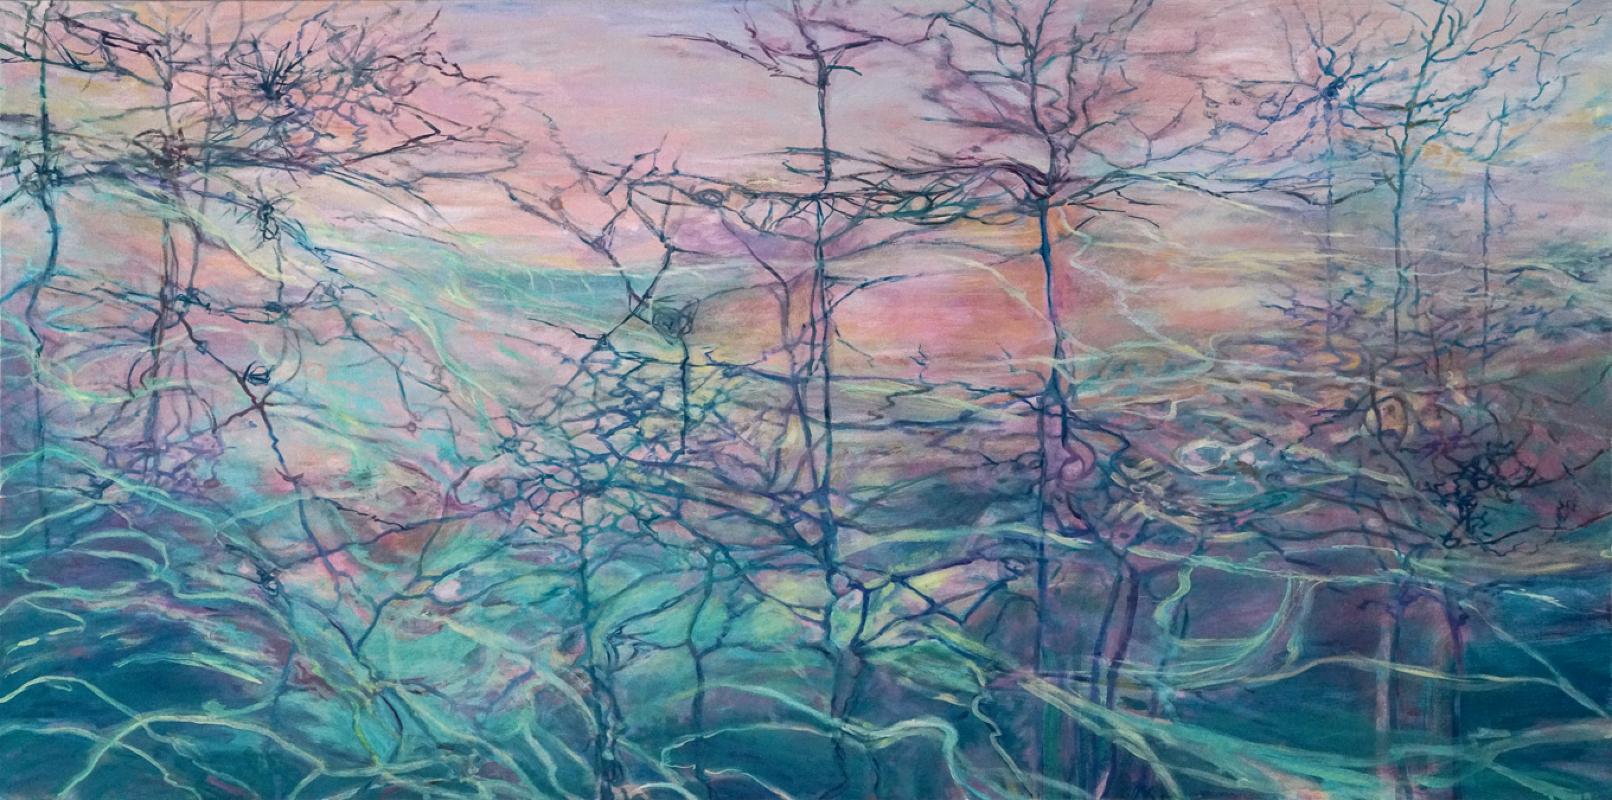 Abstract Painting Ellen Hart - Aquarelle céladon, Art abstrait, Art contemporain, Série Reflection d'eau et de verre